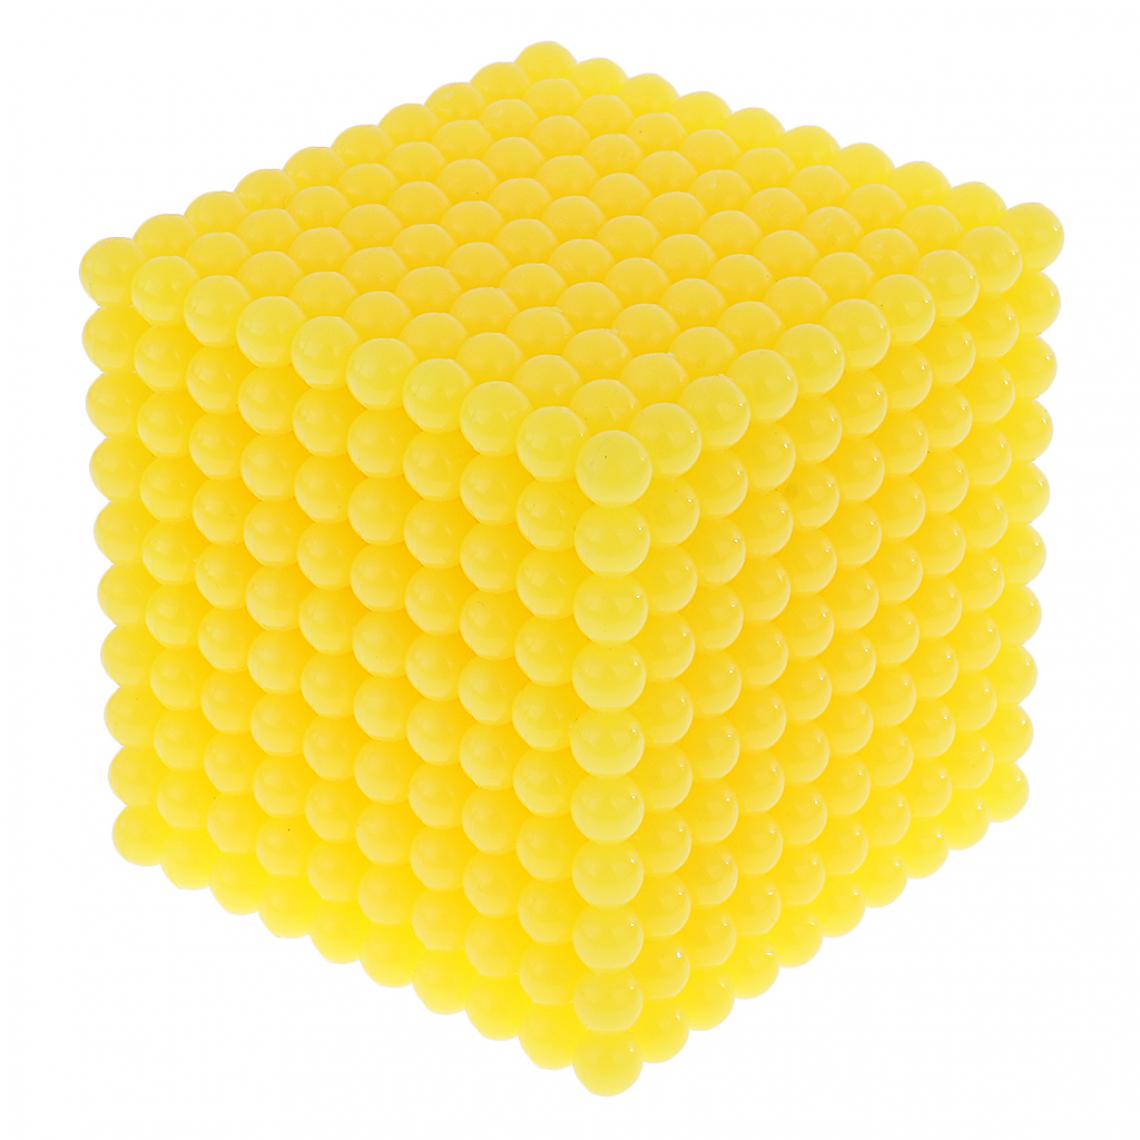 marque generique - Montessori Matériel Mathématiques Mille Perles Cube Jouet de Calcul Jouet Pédagogique pour Enfants - Jeux éducatifs